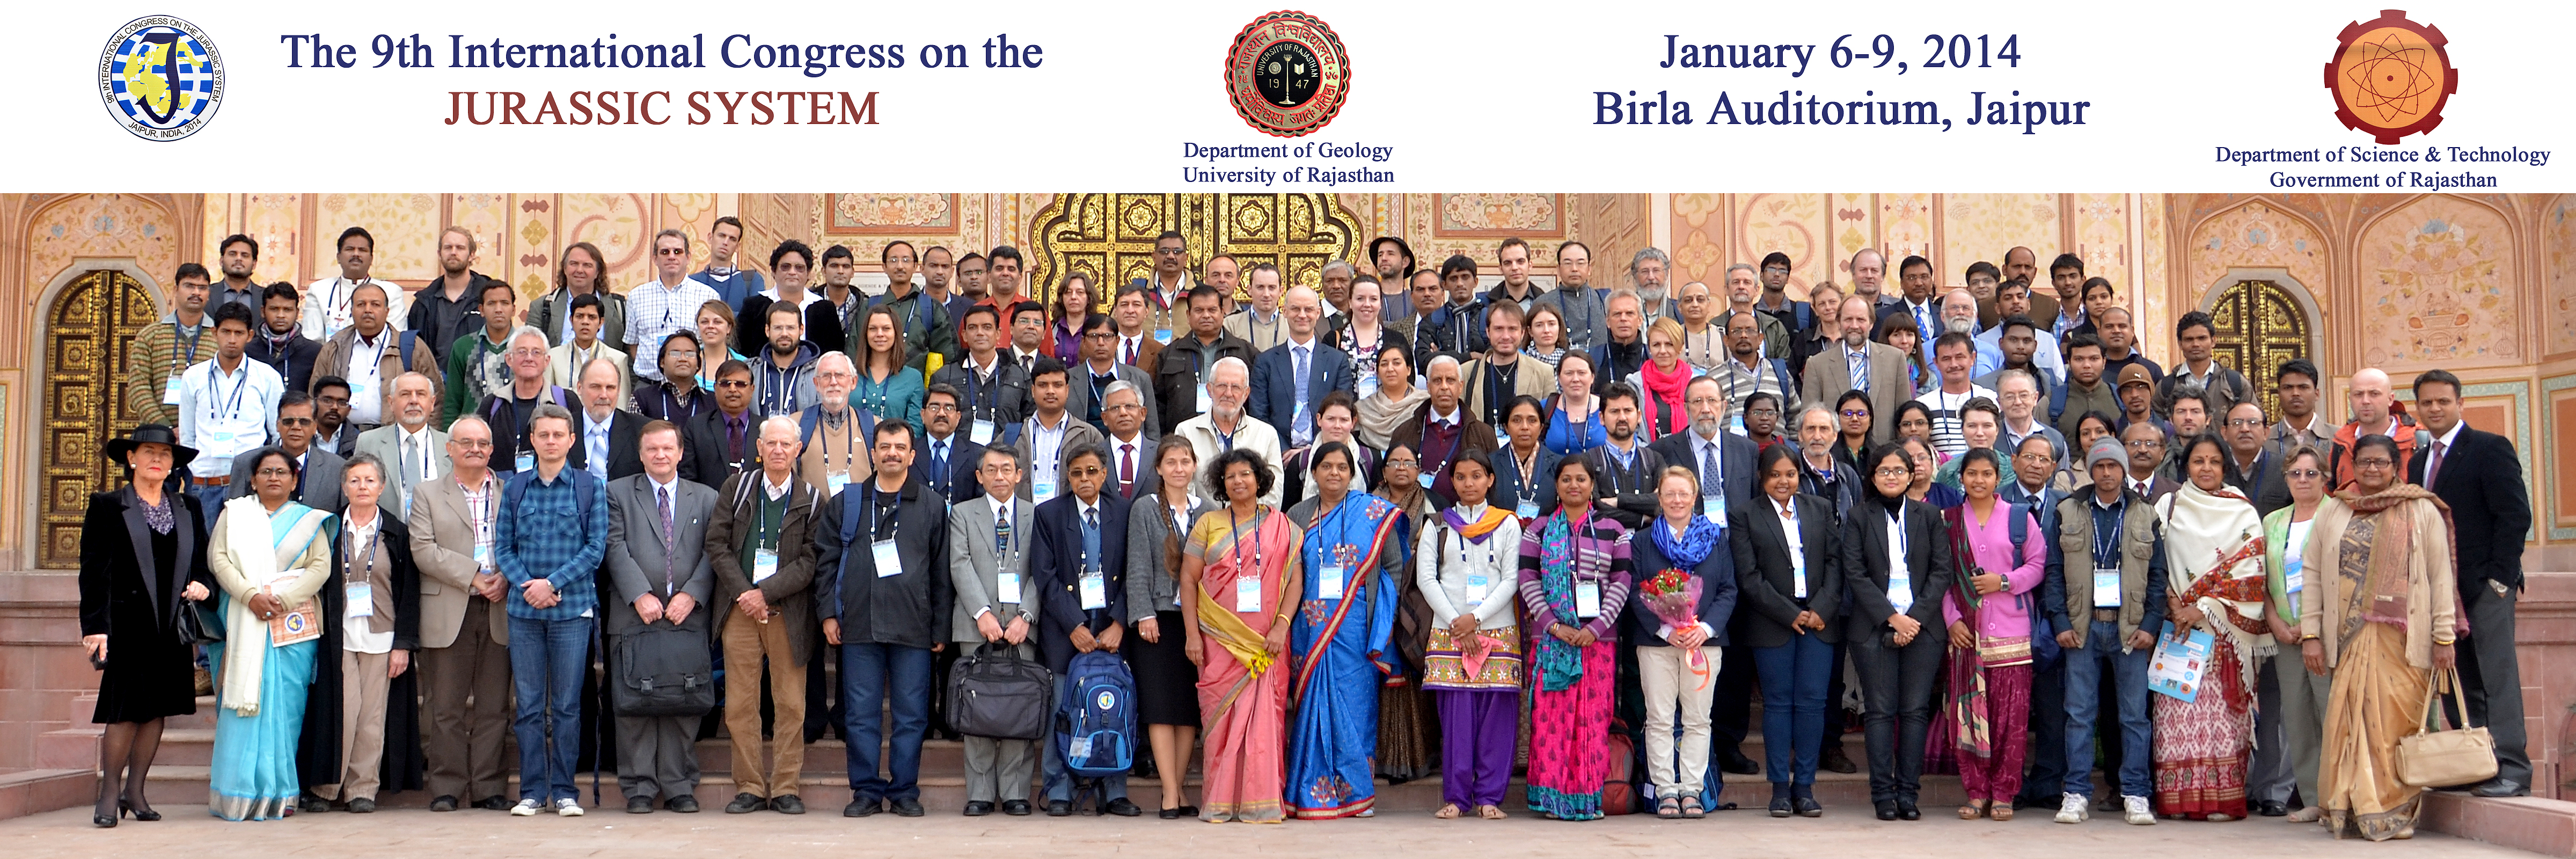 Compte rendu sur le 9ème congrès international sur le système Jurassique, Jaipur, Inde